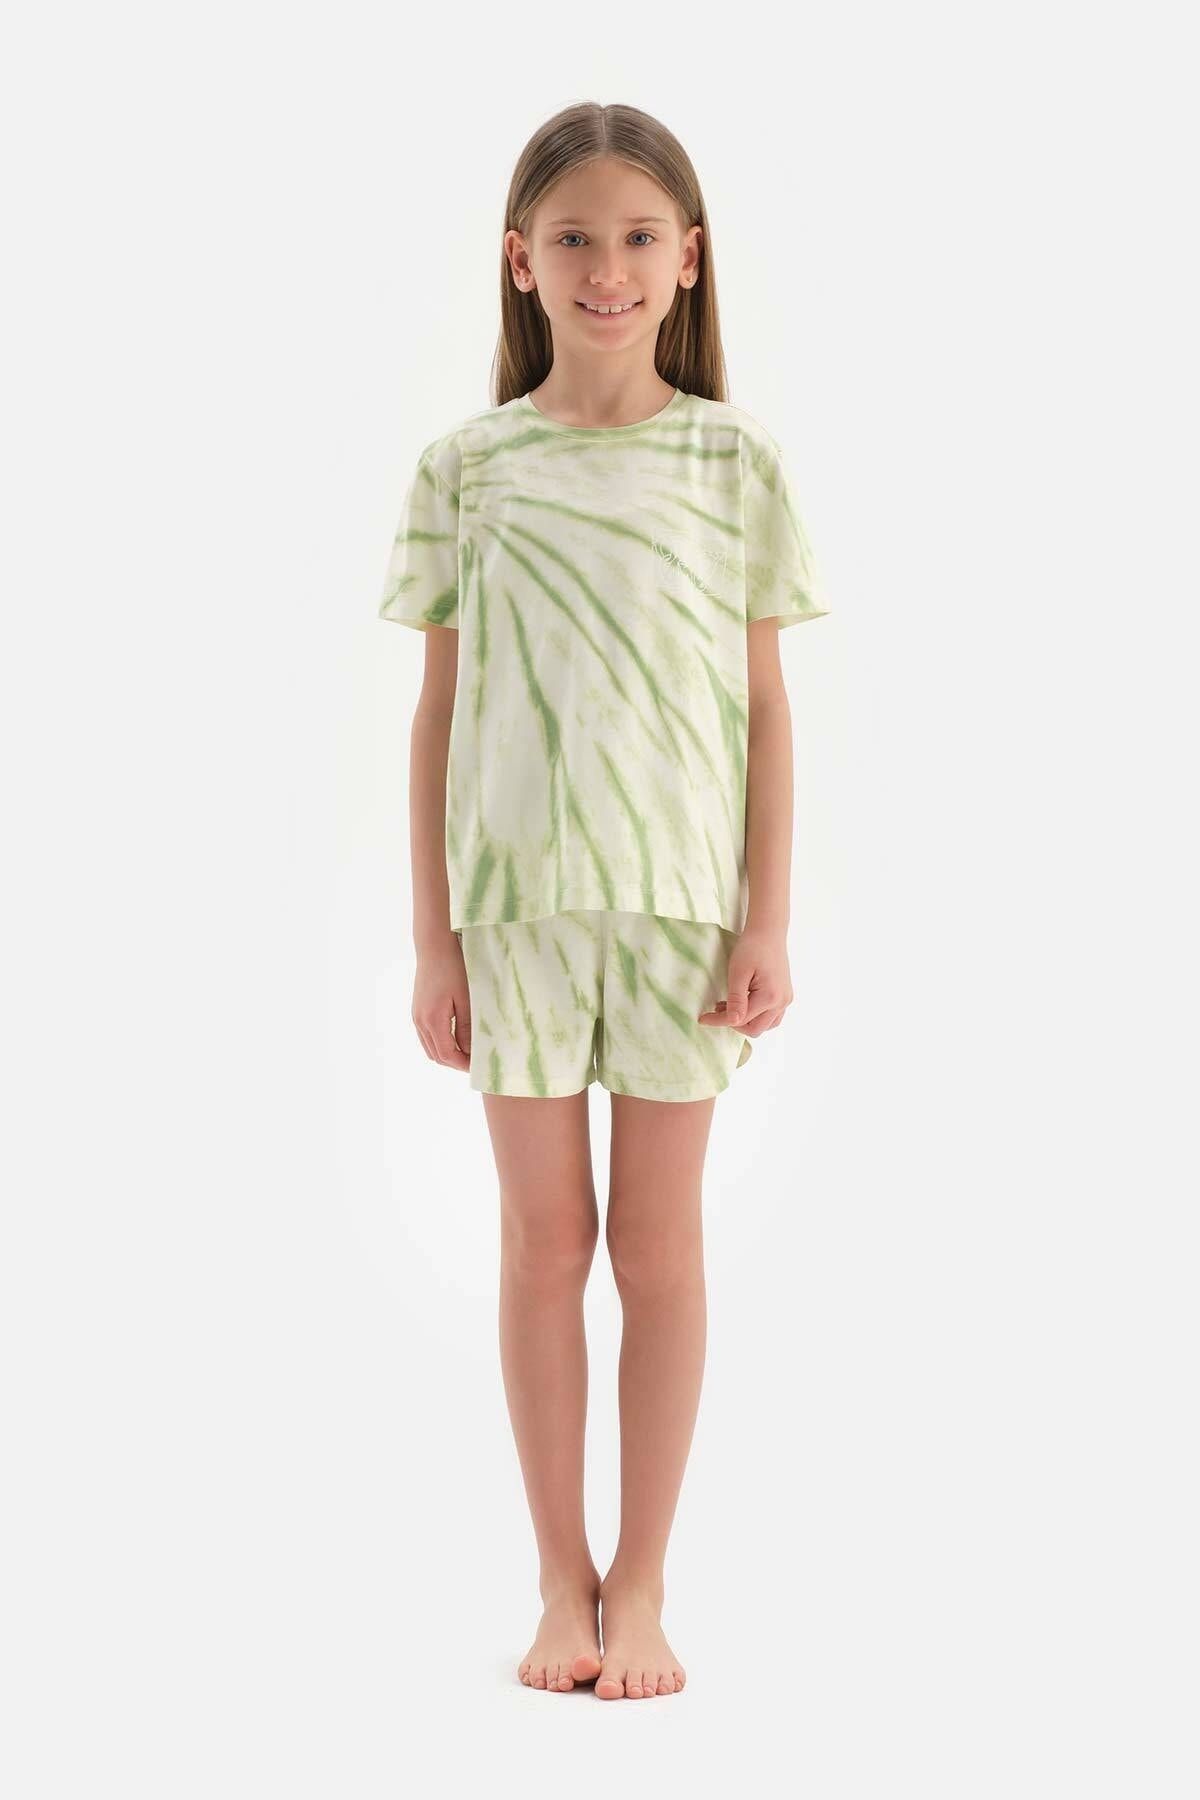 Dagi Açık Yeşil Metraj Baskılı Kısa Kollu Tişört Şort Pijama Takımı